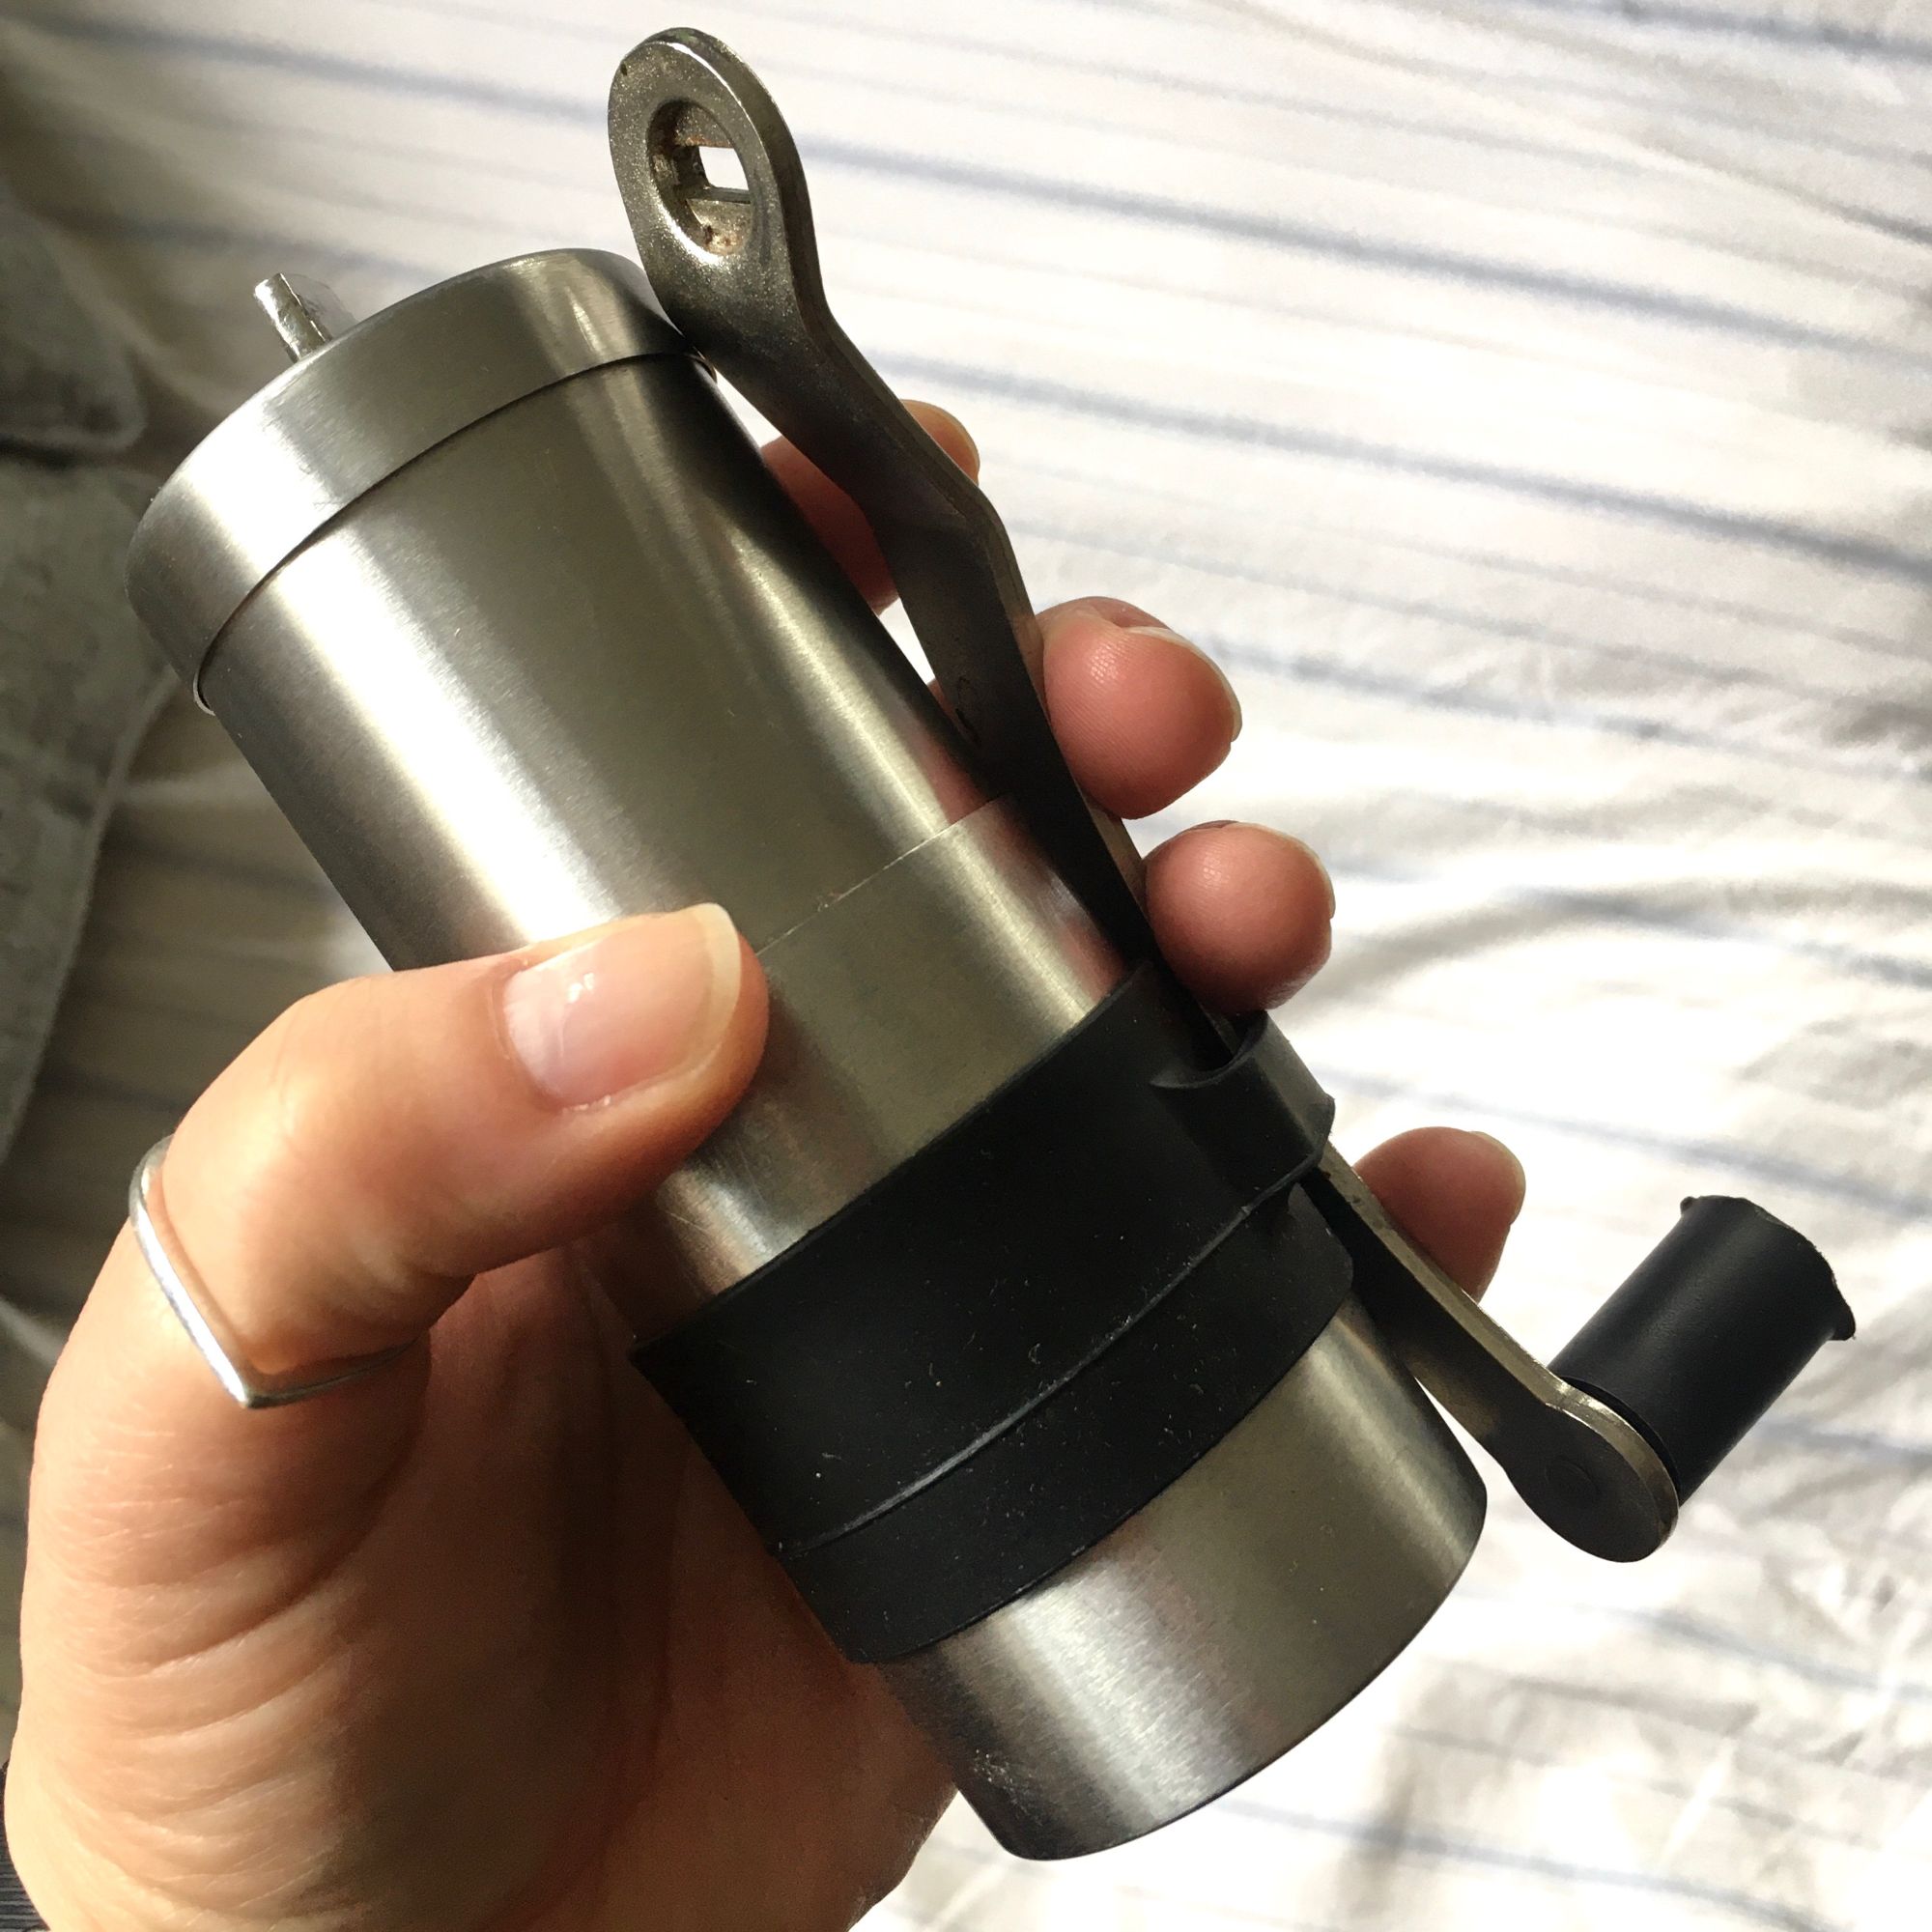 A silver coffee grinder being held.